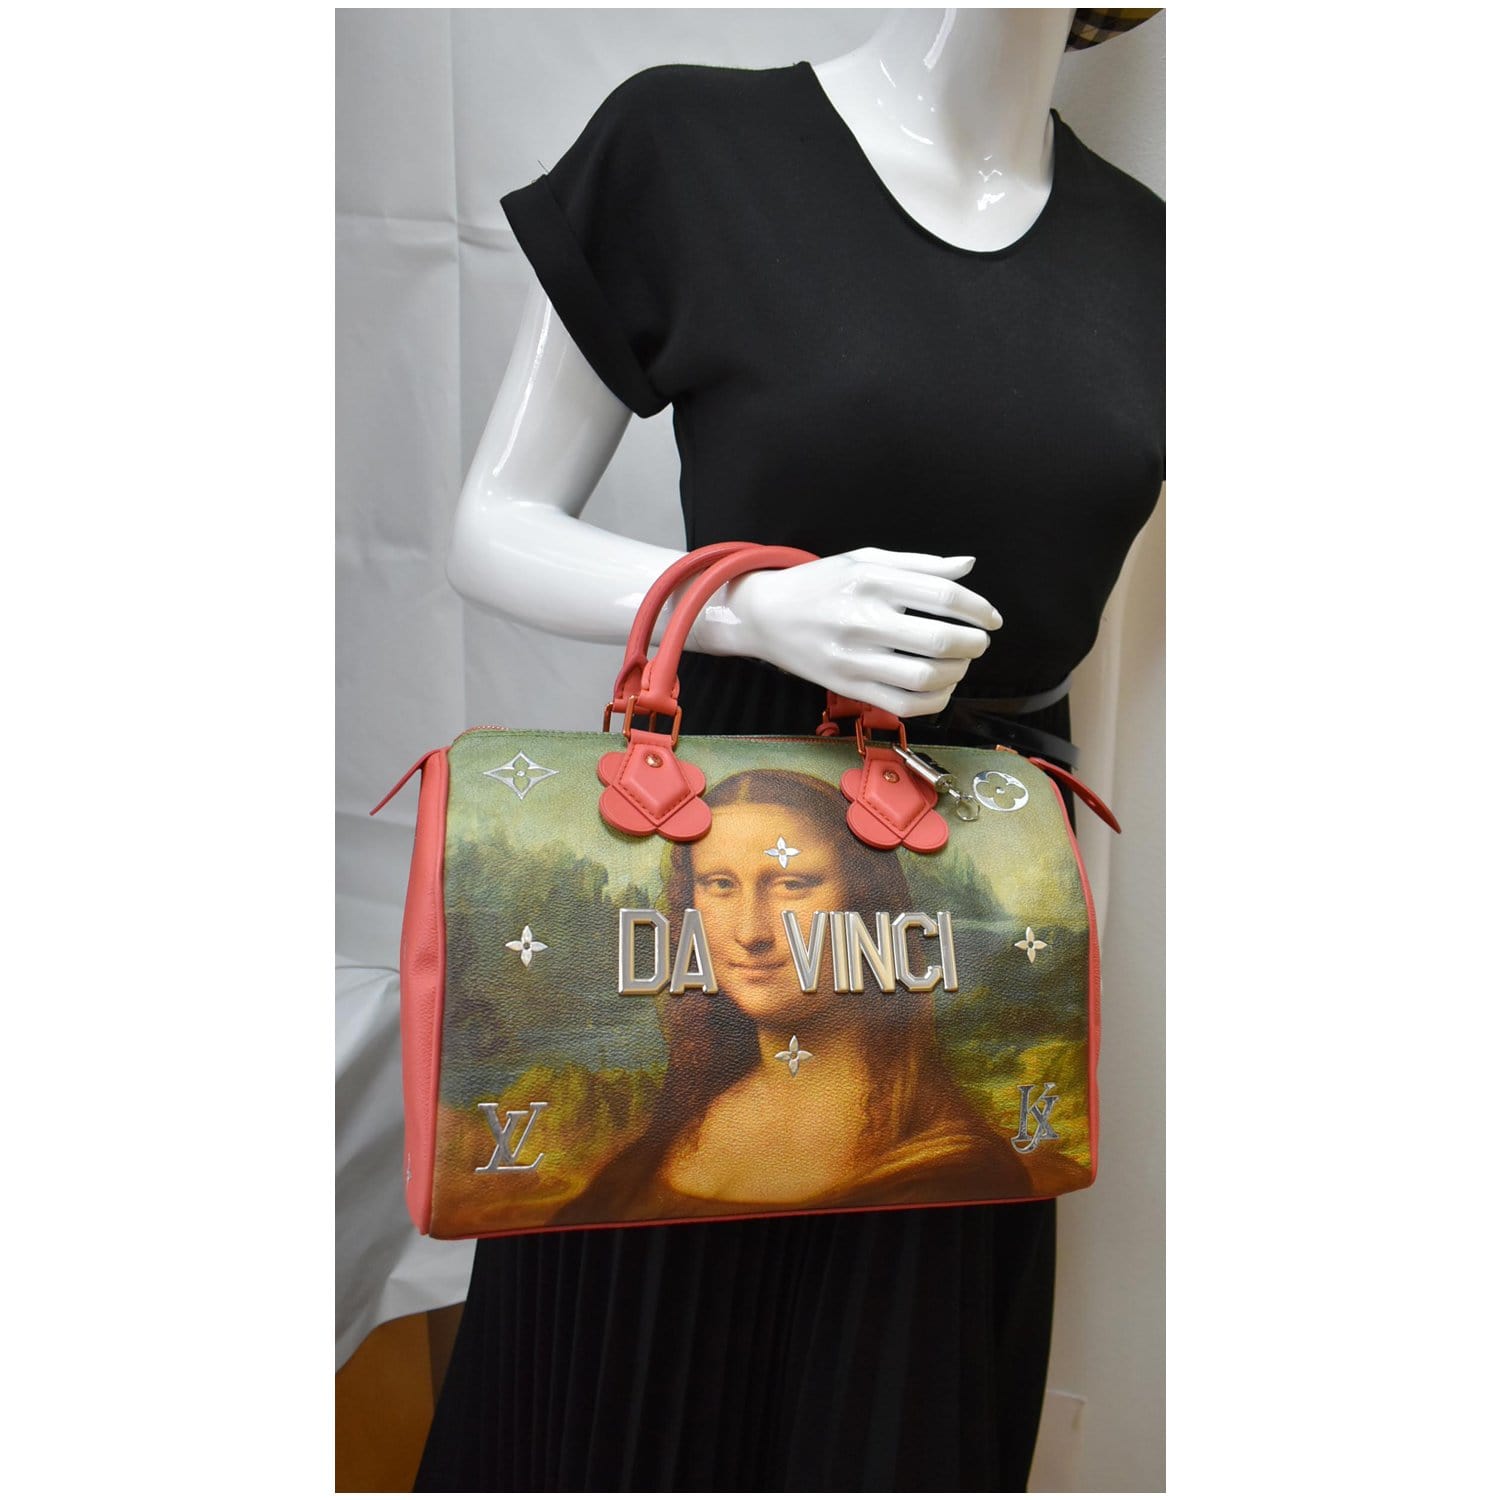 Louis Vuitton Limited Edition Coated Canvas Jeff Koons Da Vinci